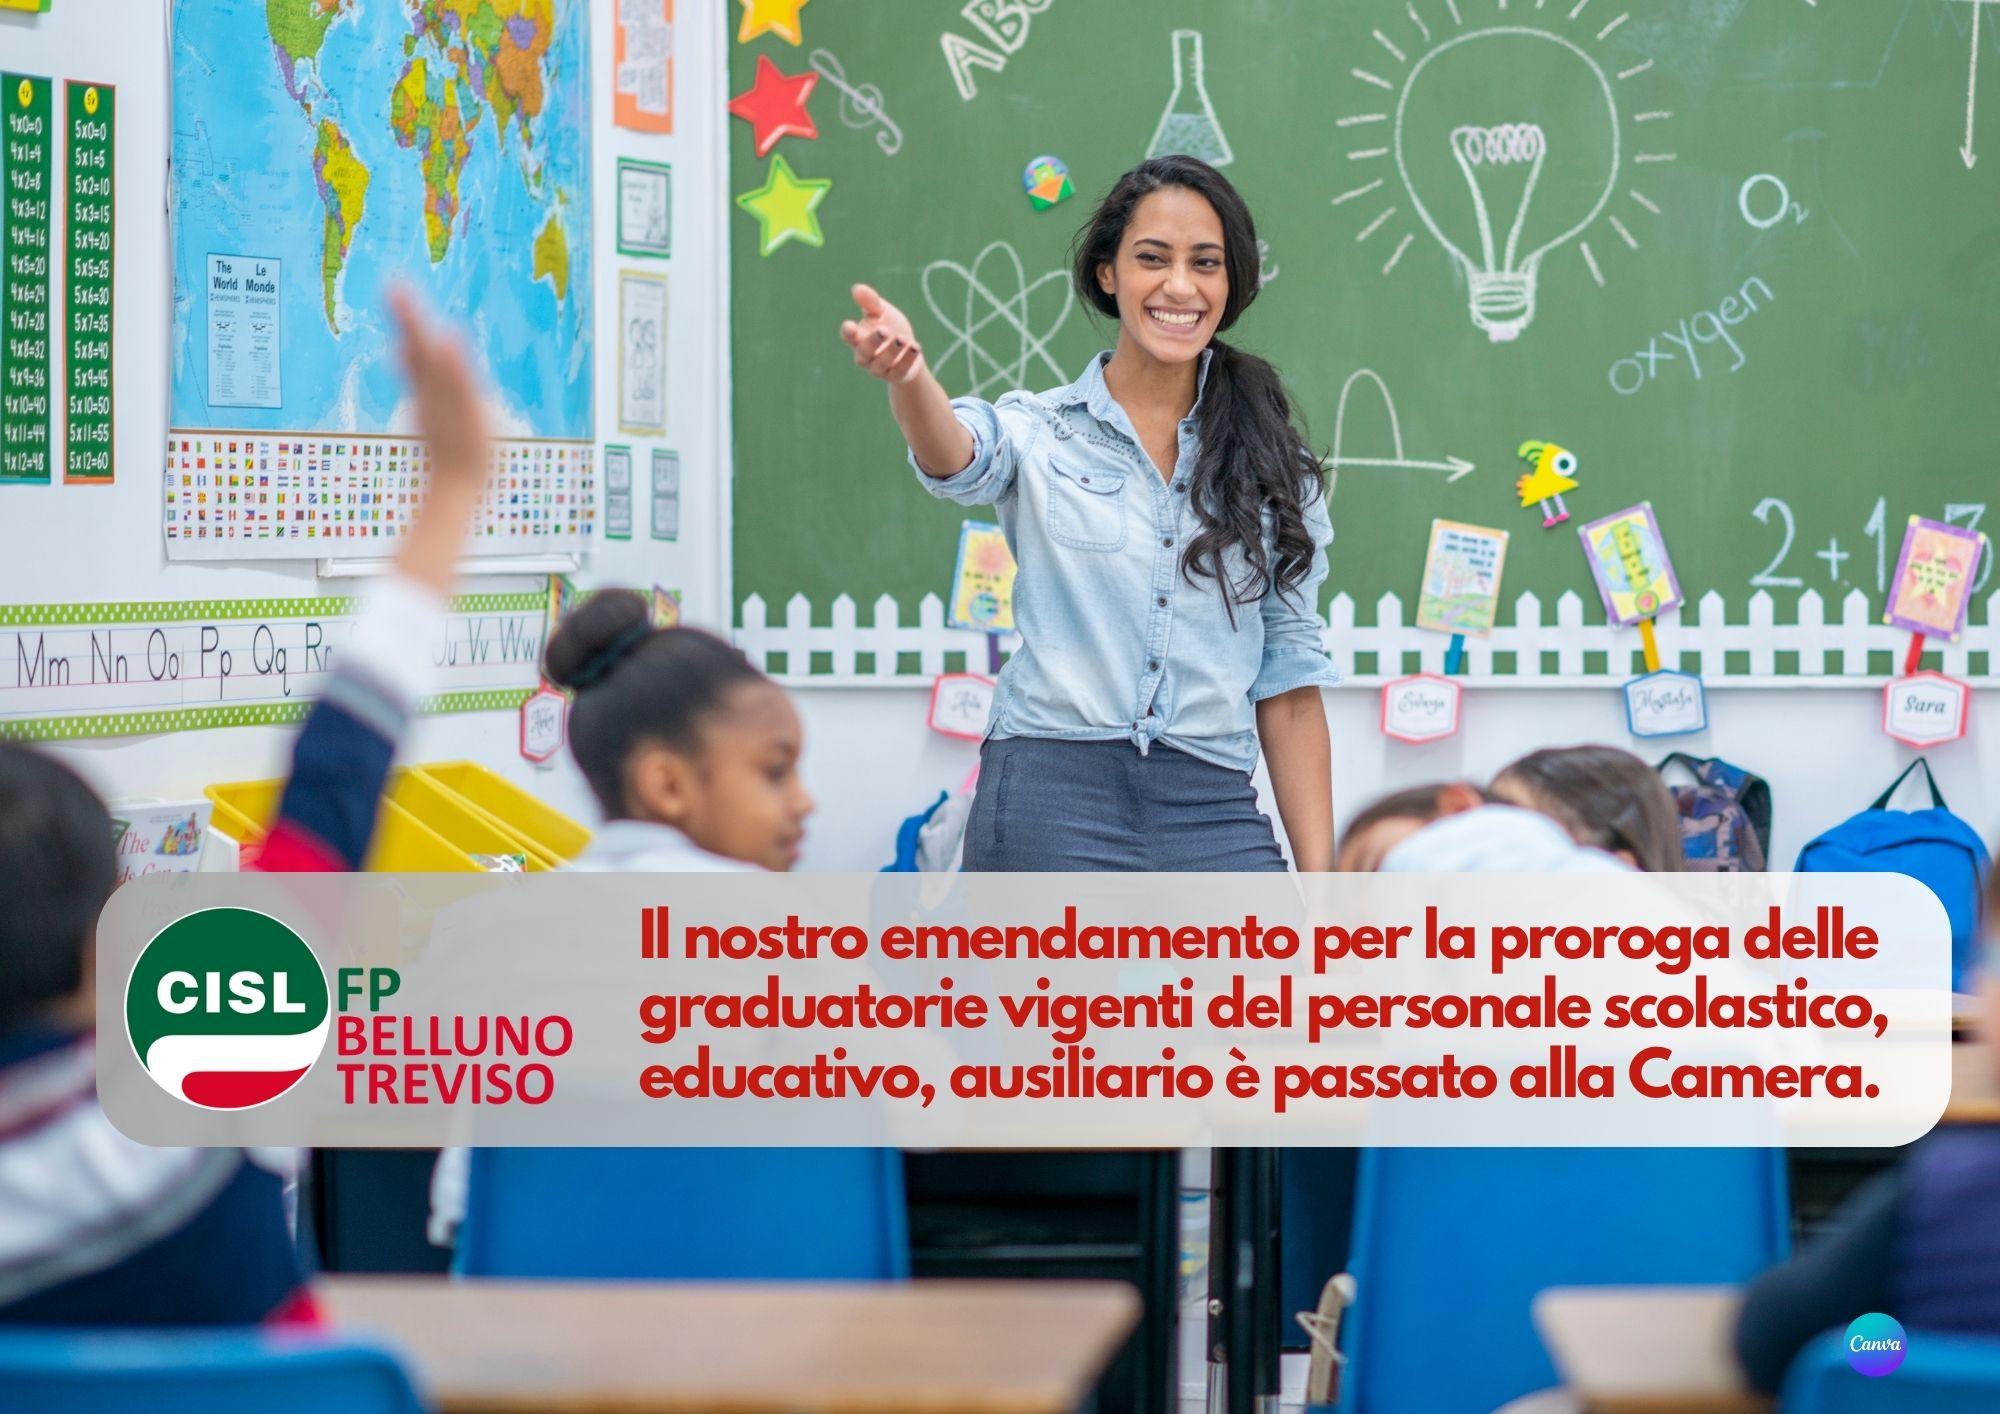 CISL FP Belluno Treviso. Educativo Scolastico: emendamento proroga graduatorie vigenti passa alla Camera